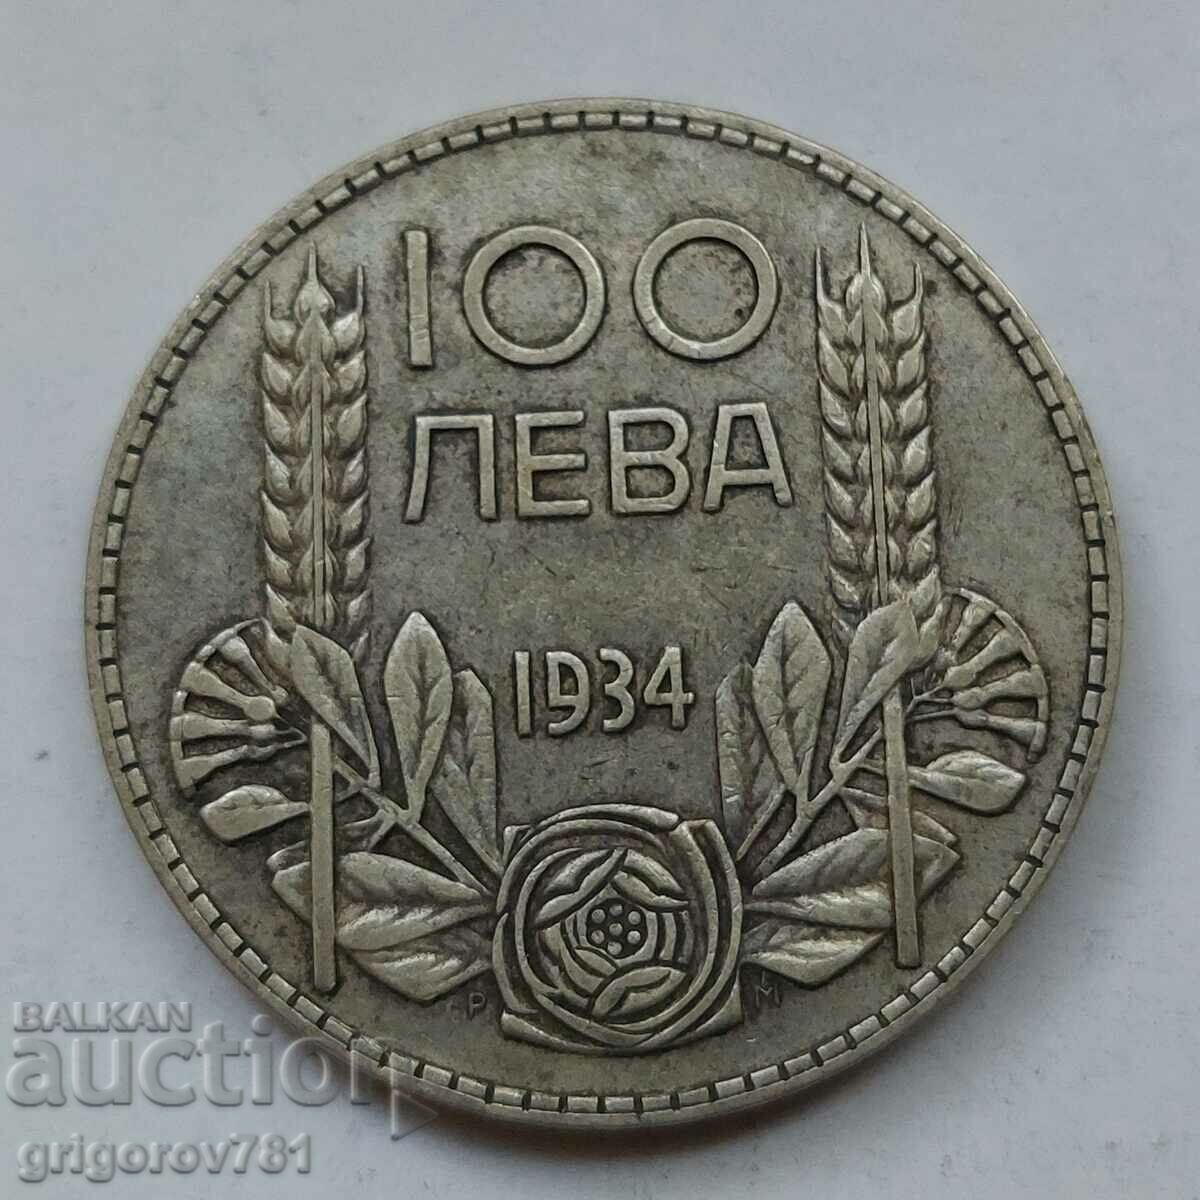 100 leva silver Bulgaria 1934 - silver coin #66